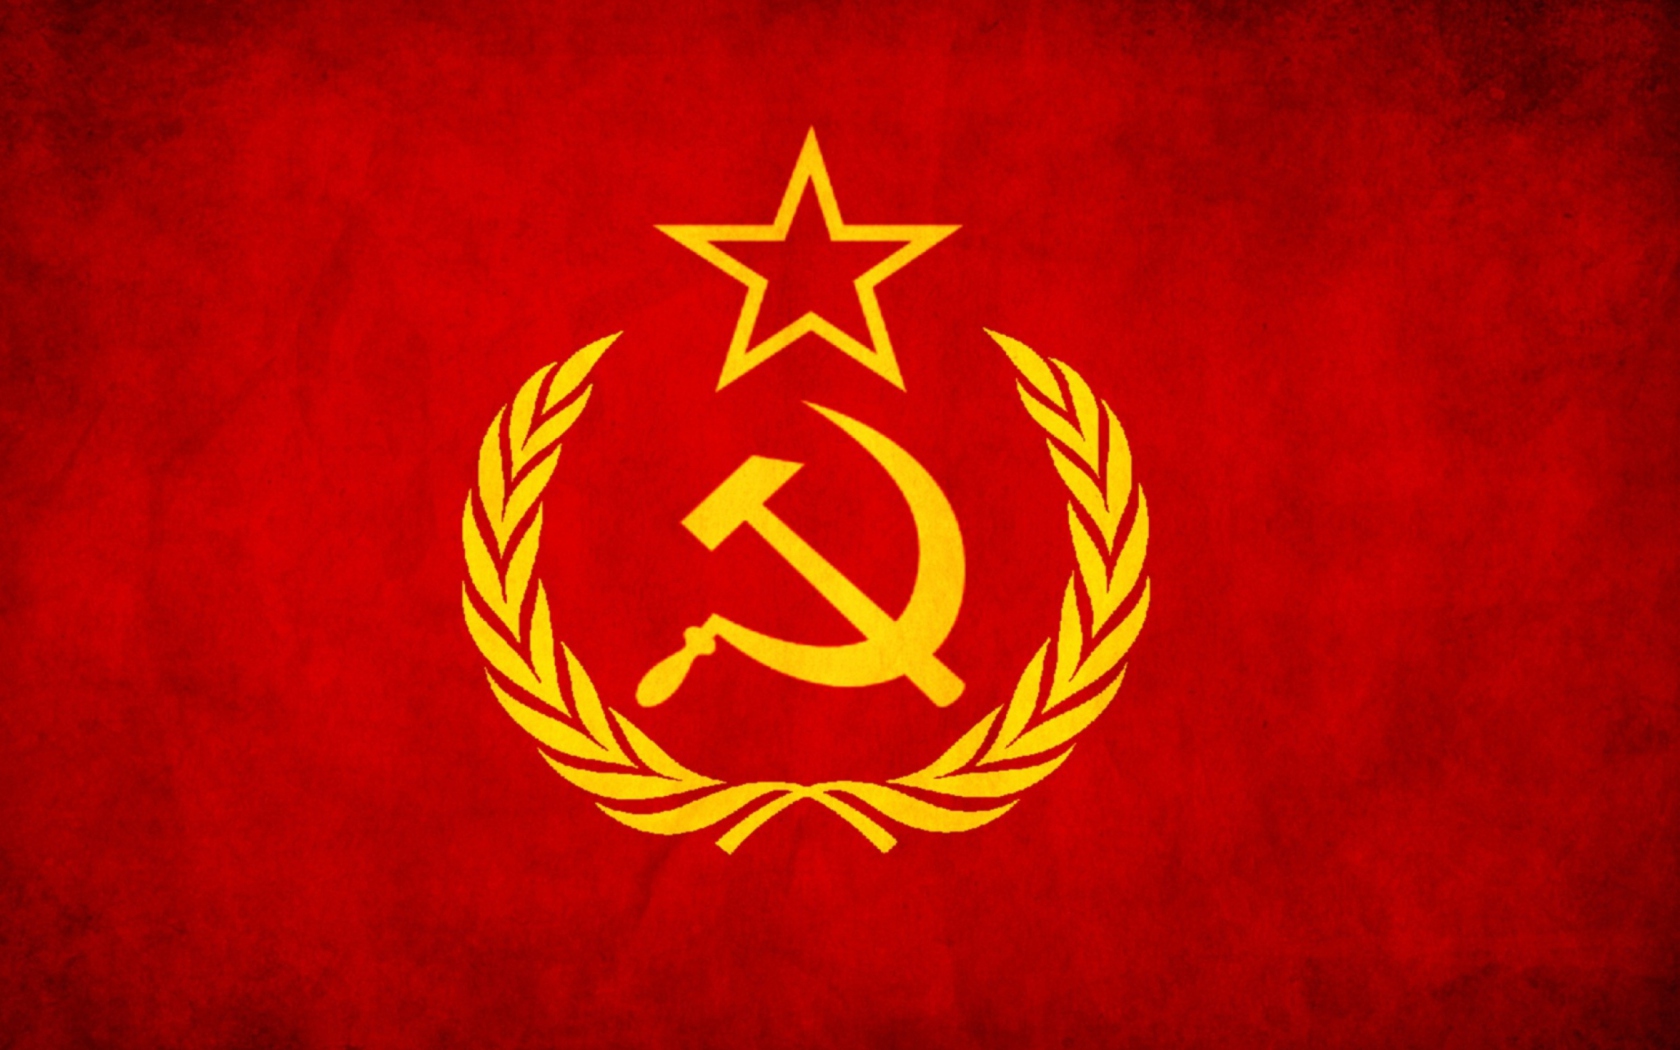 Обои Soviet Union USSR Flag 1680x1050